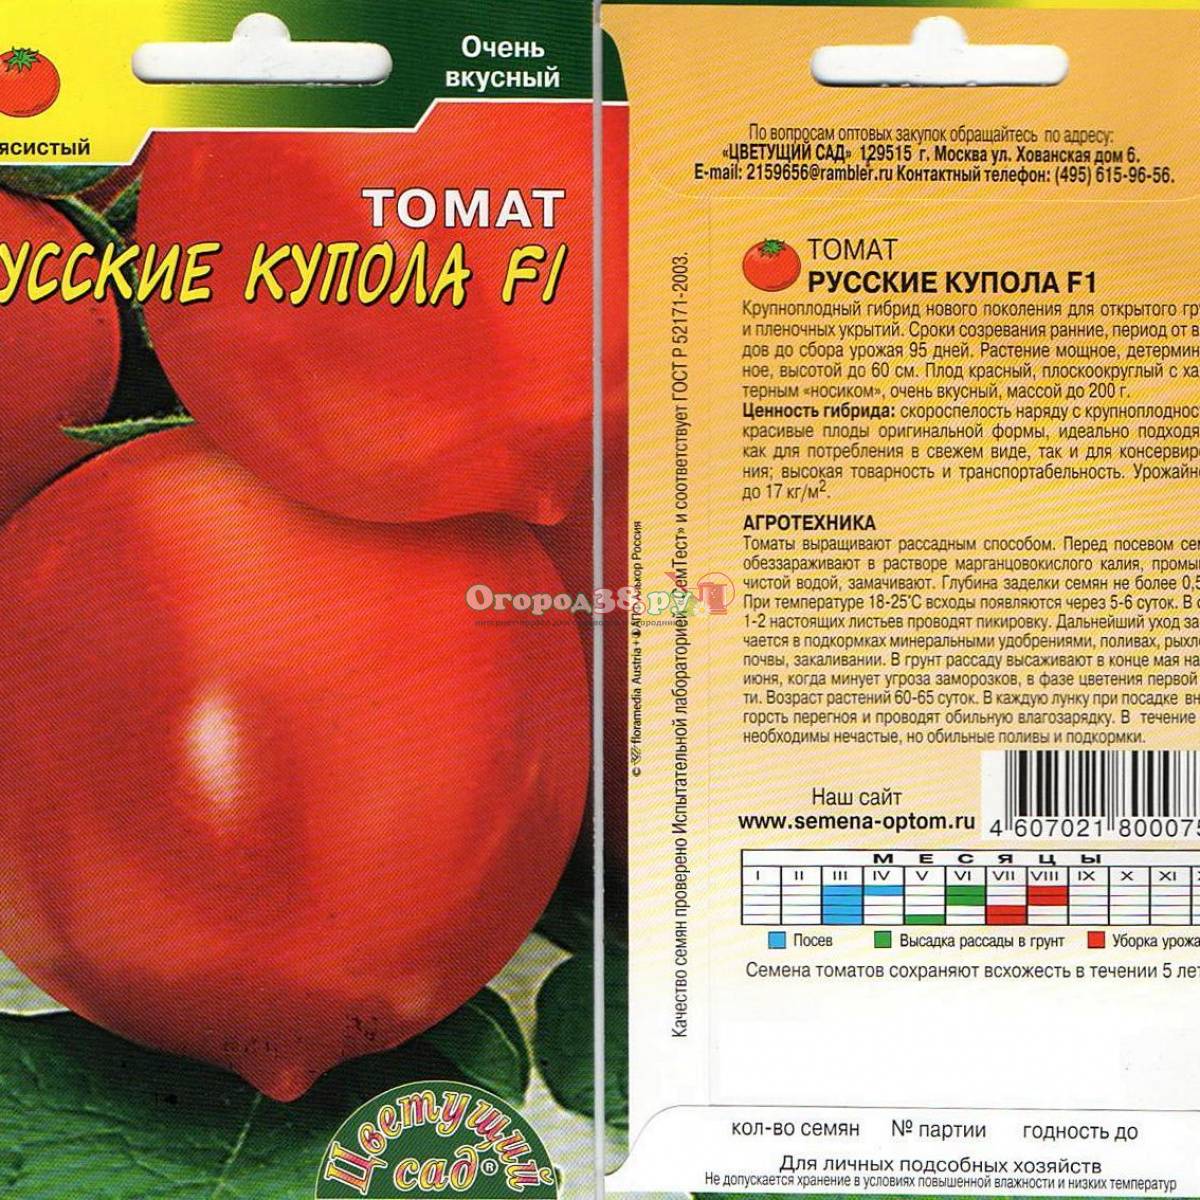 Томат золотые купола: отзывы (34), фото, урожайность, описание и характеристика сорта | tomatland.ru